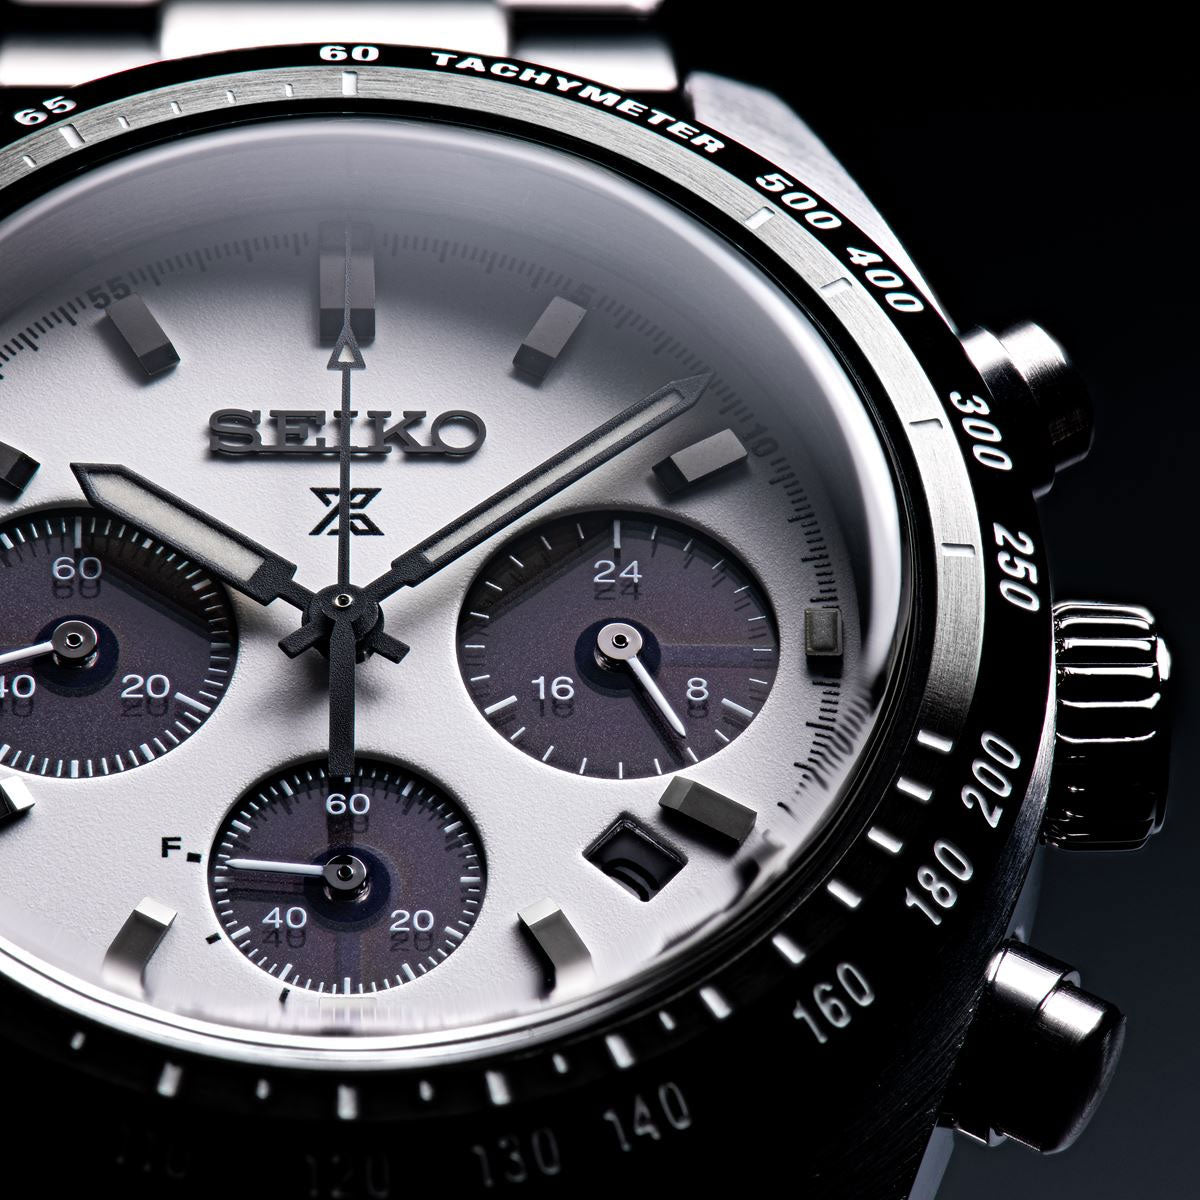 風防素材カーブサファイアガラスセイコー プロスペックス スピードタイマー SBDL085 メンズ 腕時計